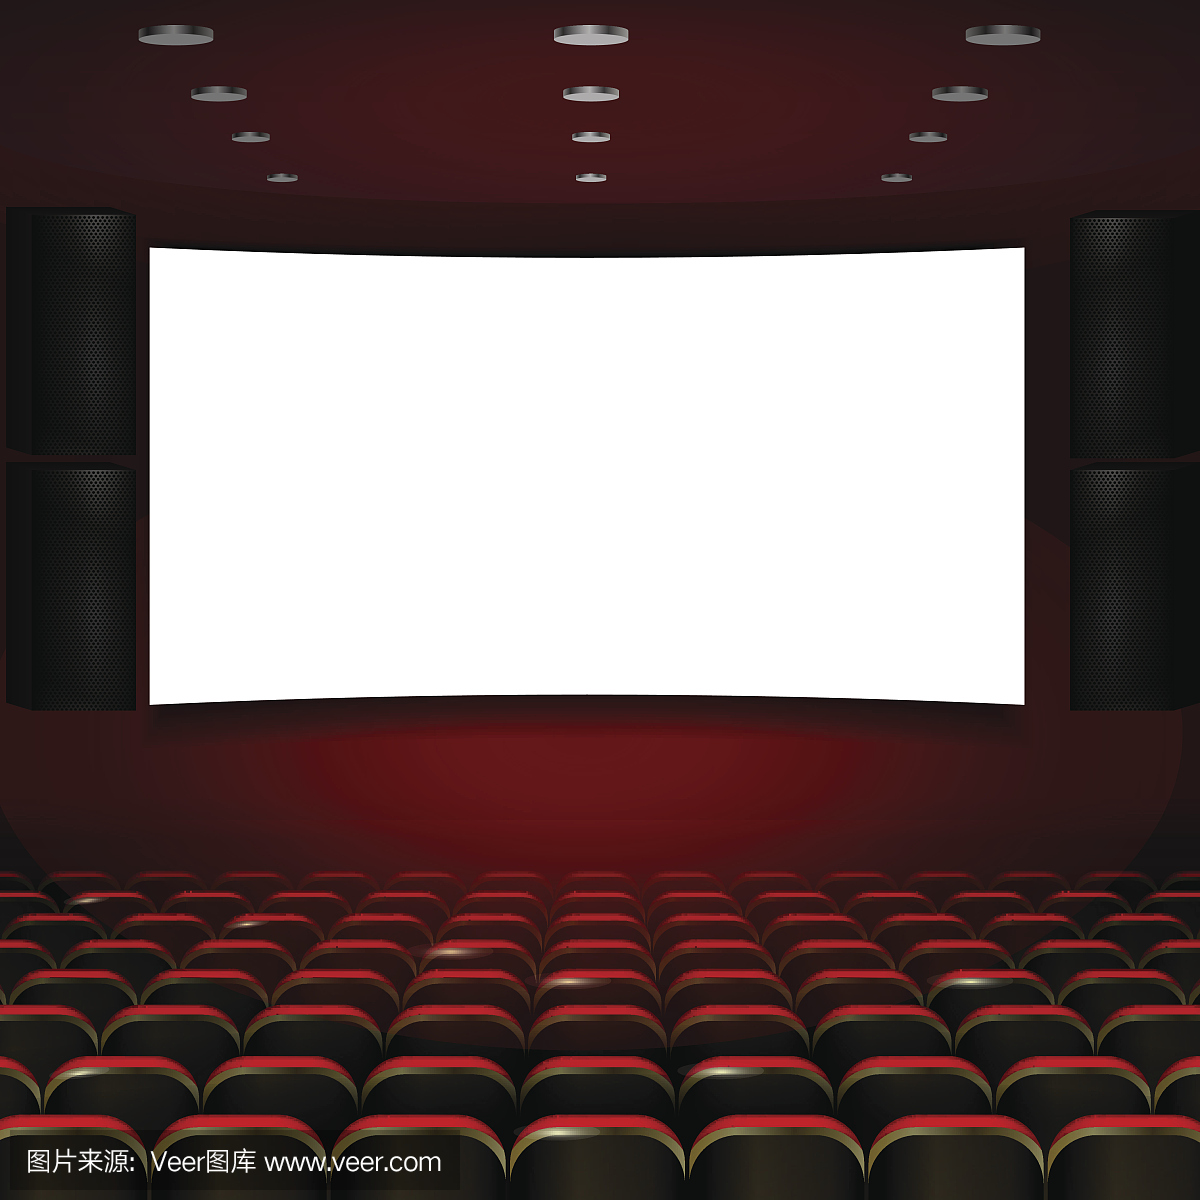 电影院座位图设计元素素材免费下载(图片编号:5425152)-六图网